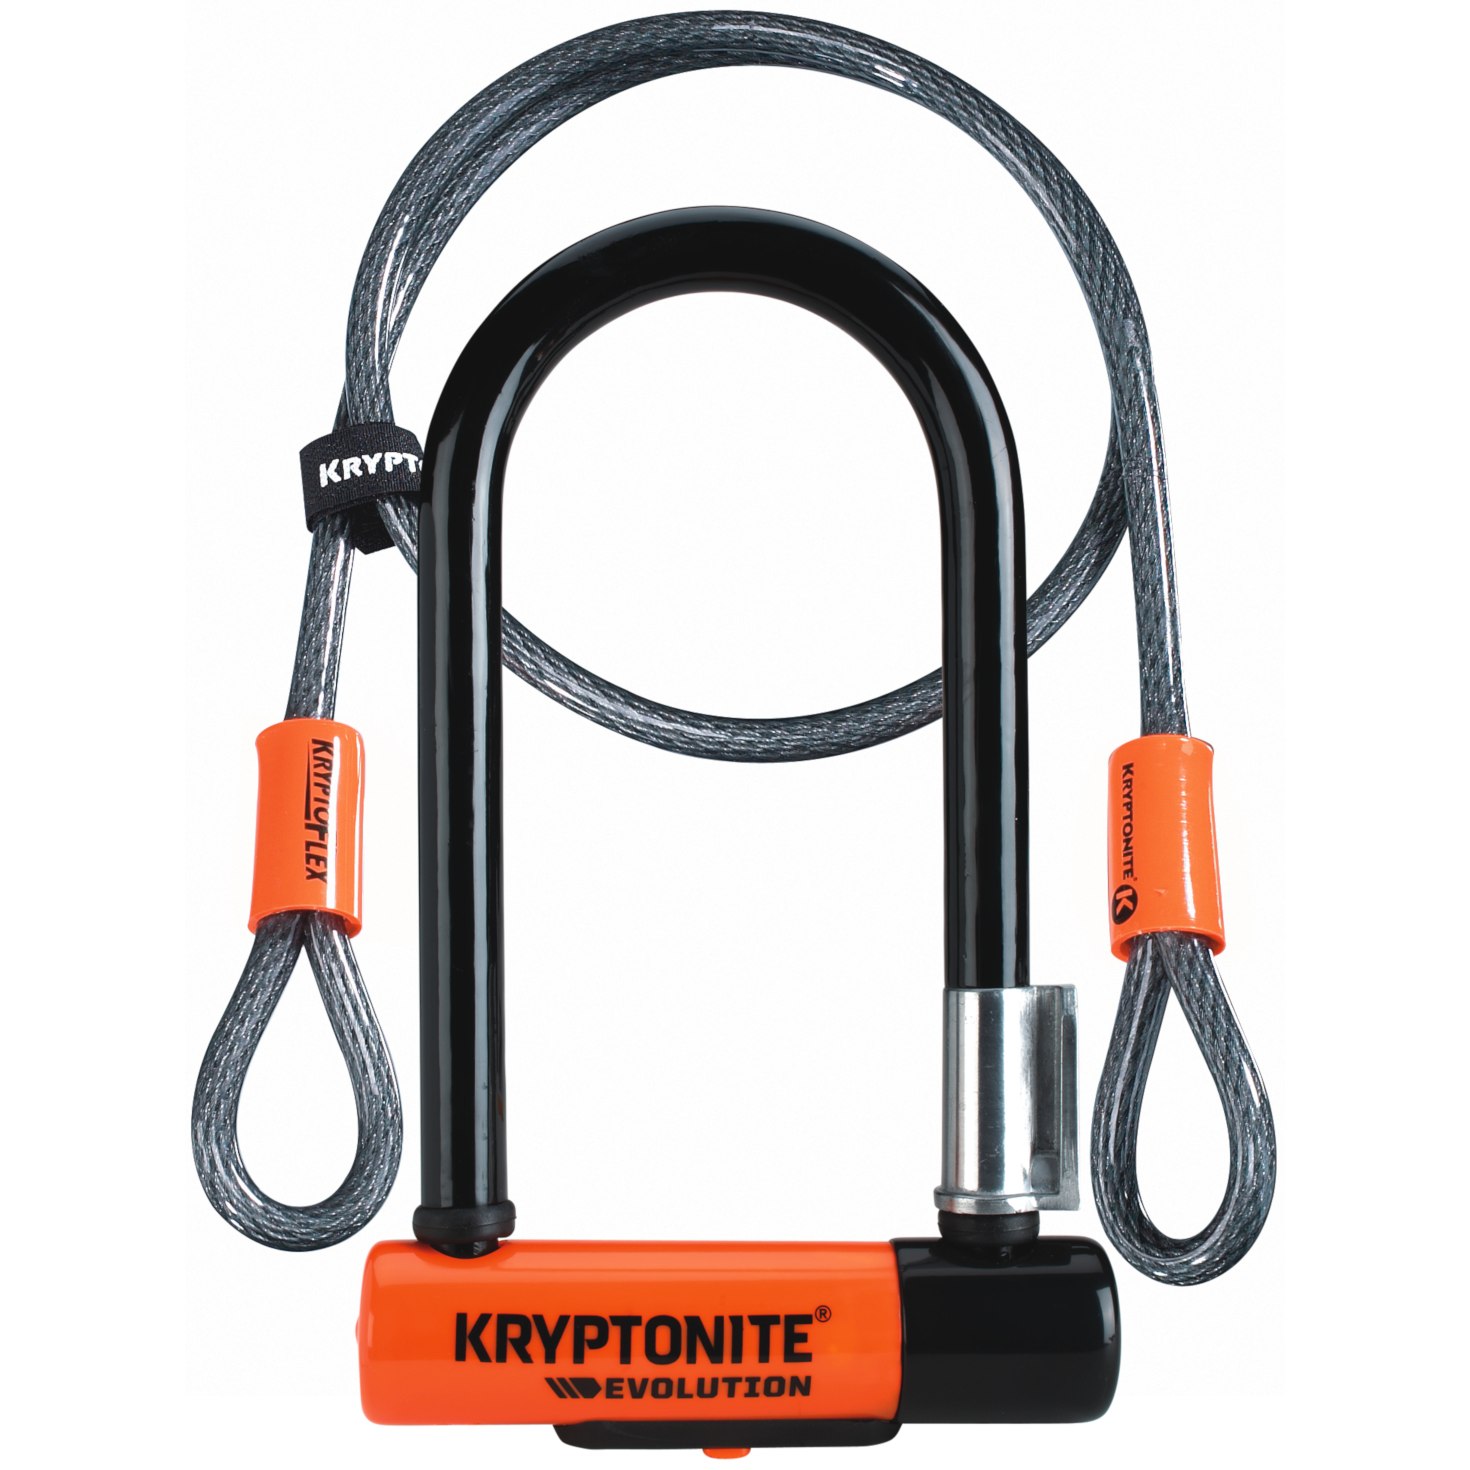 Produktbild von Kryptonite Evolution Mini-7 Bügelschloss + 120cm Kryptoflex-Kabel - black/orange